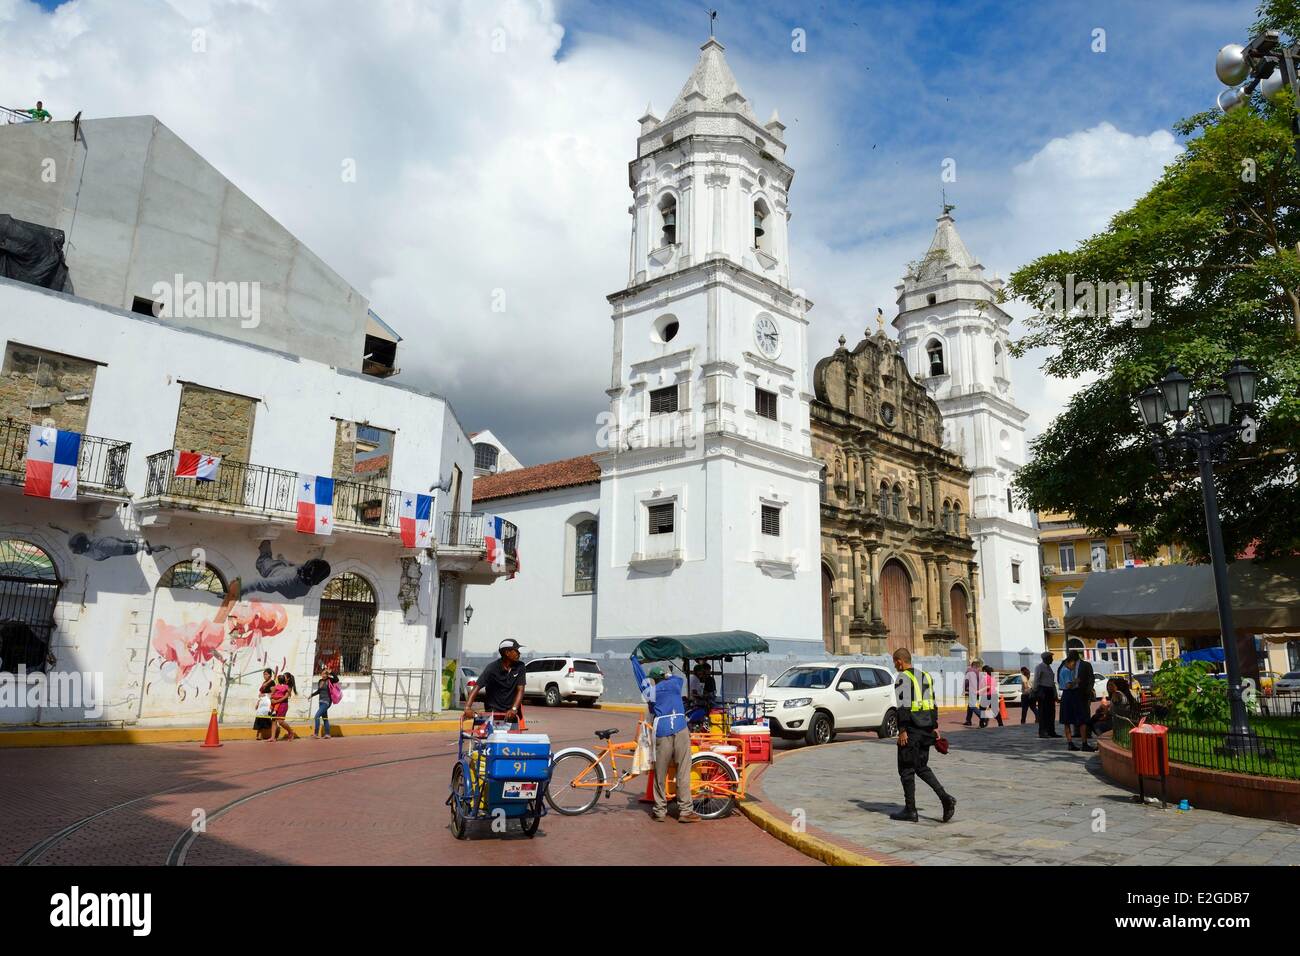 Panama City Panama ville historique inscrite au Patrimoine Mondial de l'UNESCO Casco Antiguo (Viejo) Barrio San Felipe cathédrale du 17ème siècle. Banque D'Images